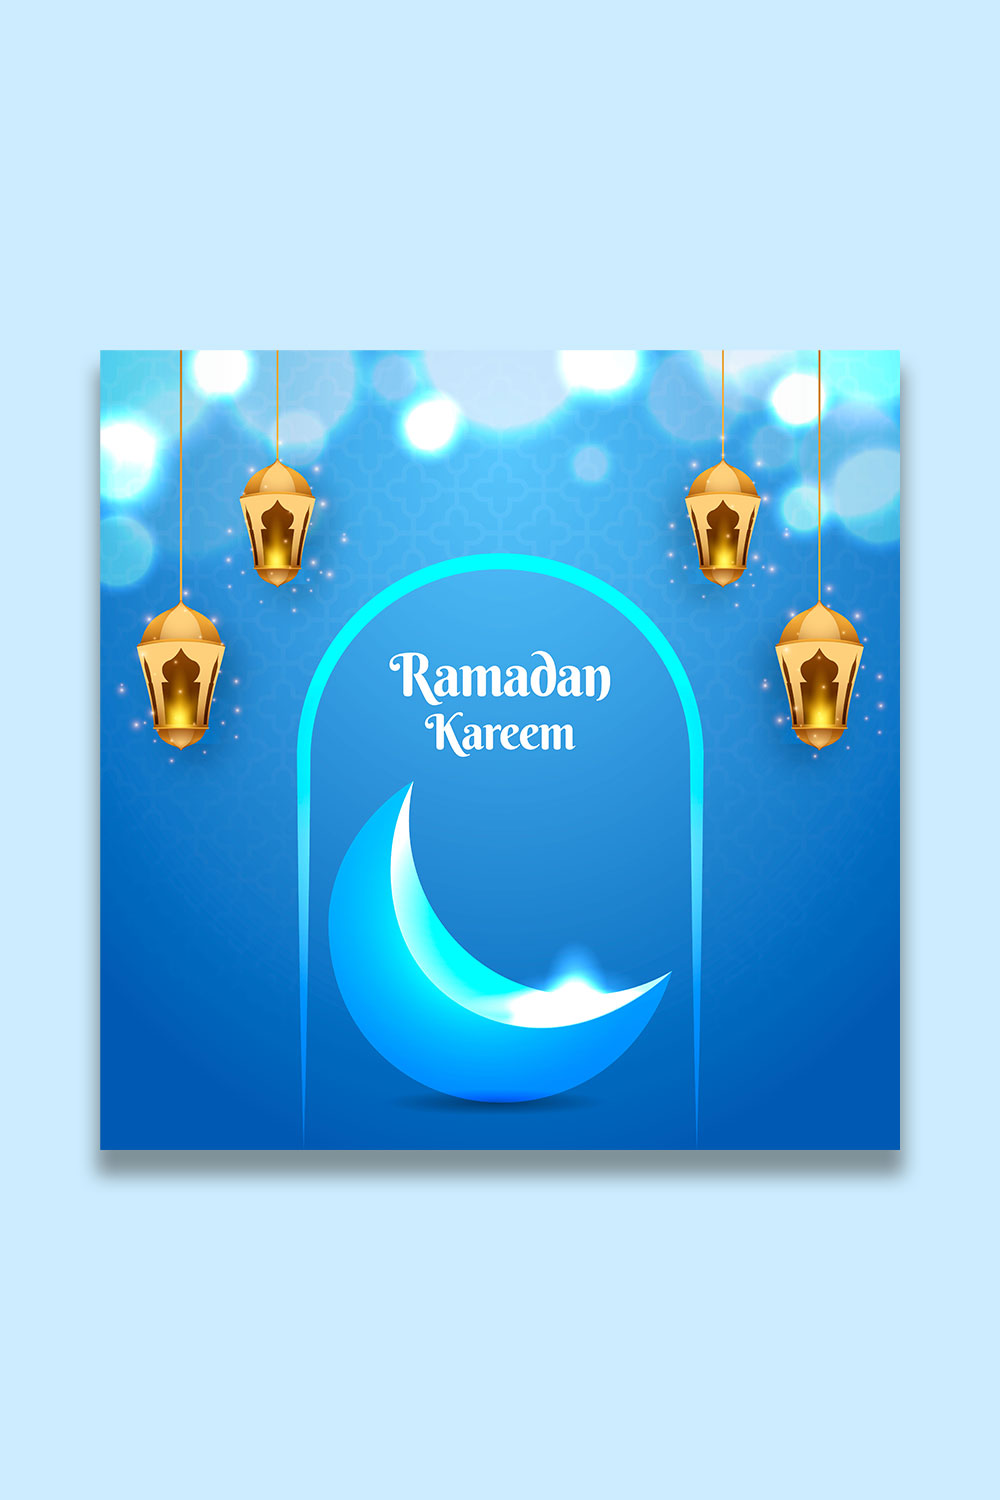 Ramadan Kareem traditional Islamic festival religious social media banner pinterest preview image.